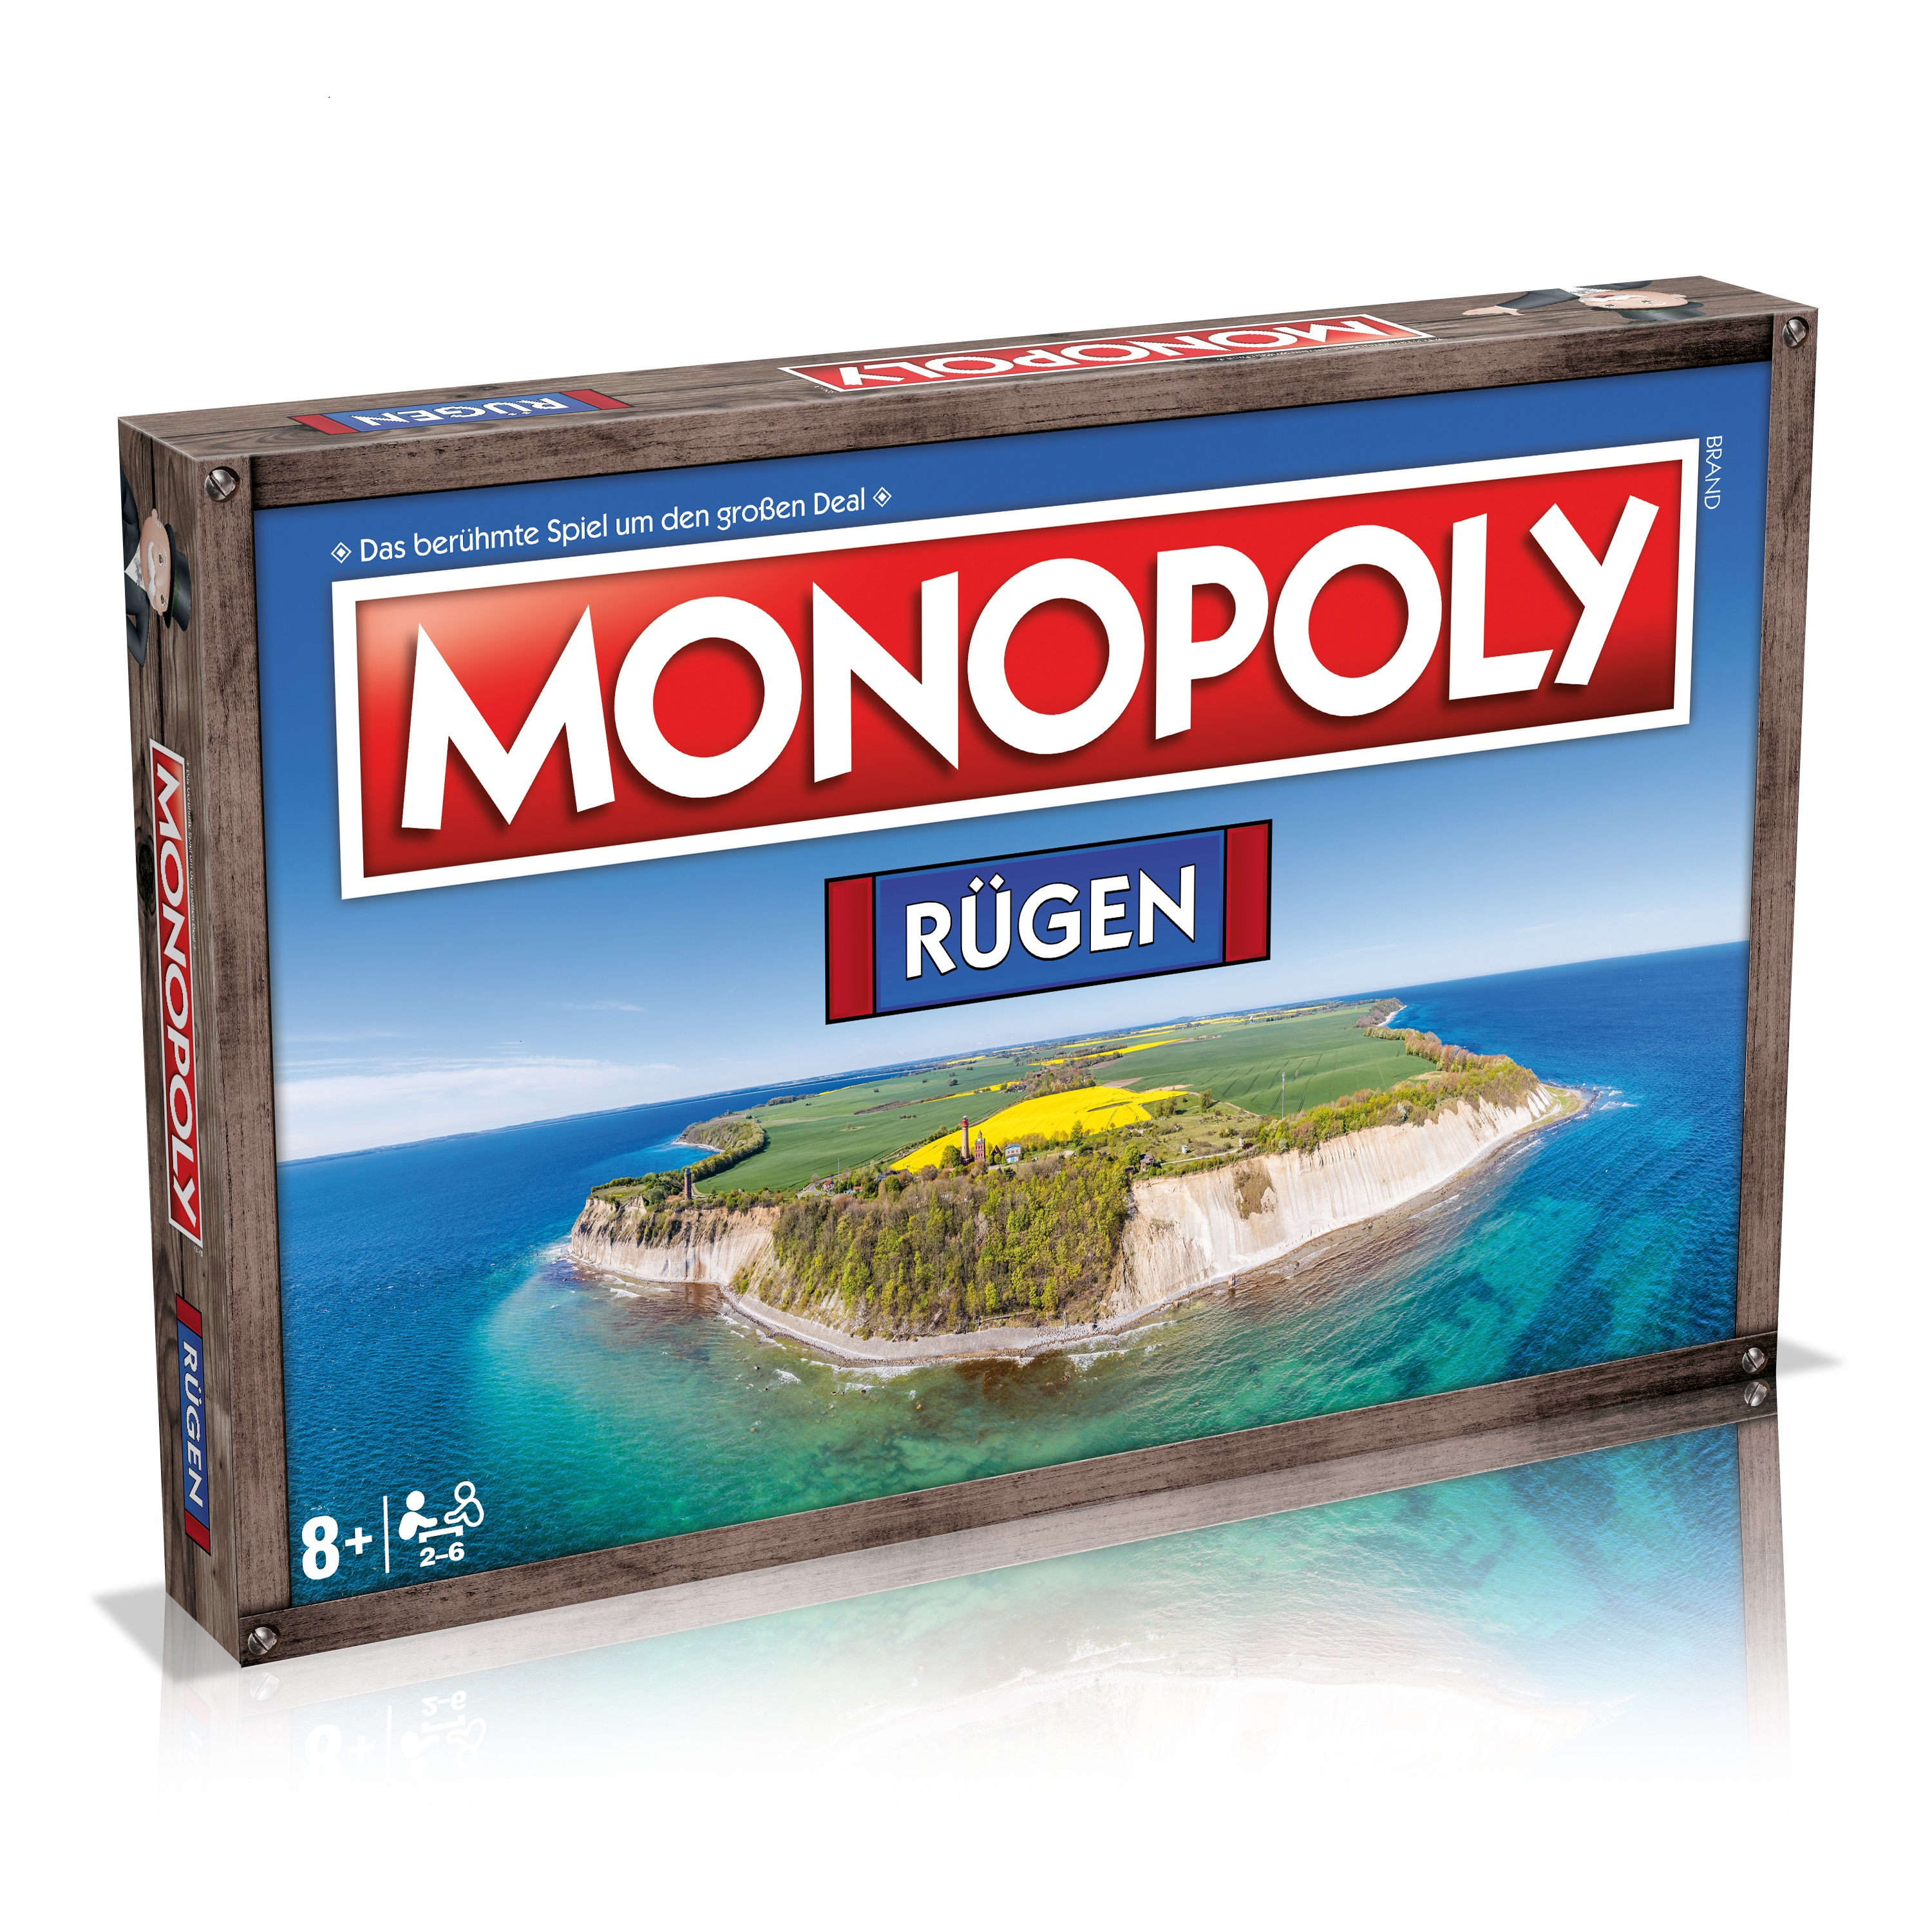 Monopoly Rügen Monopoly Rügen - MOVES WINNING